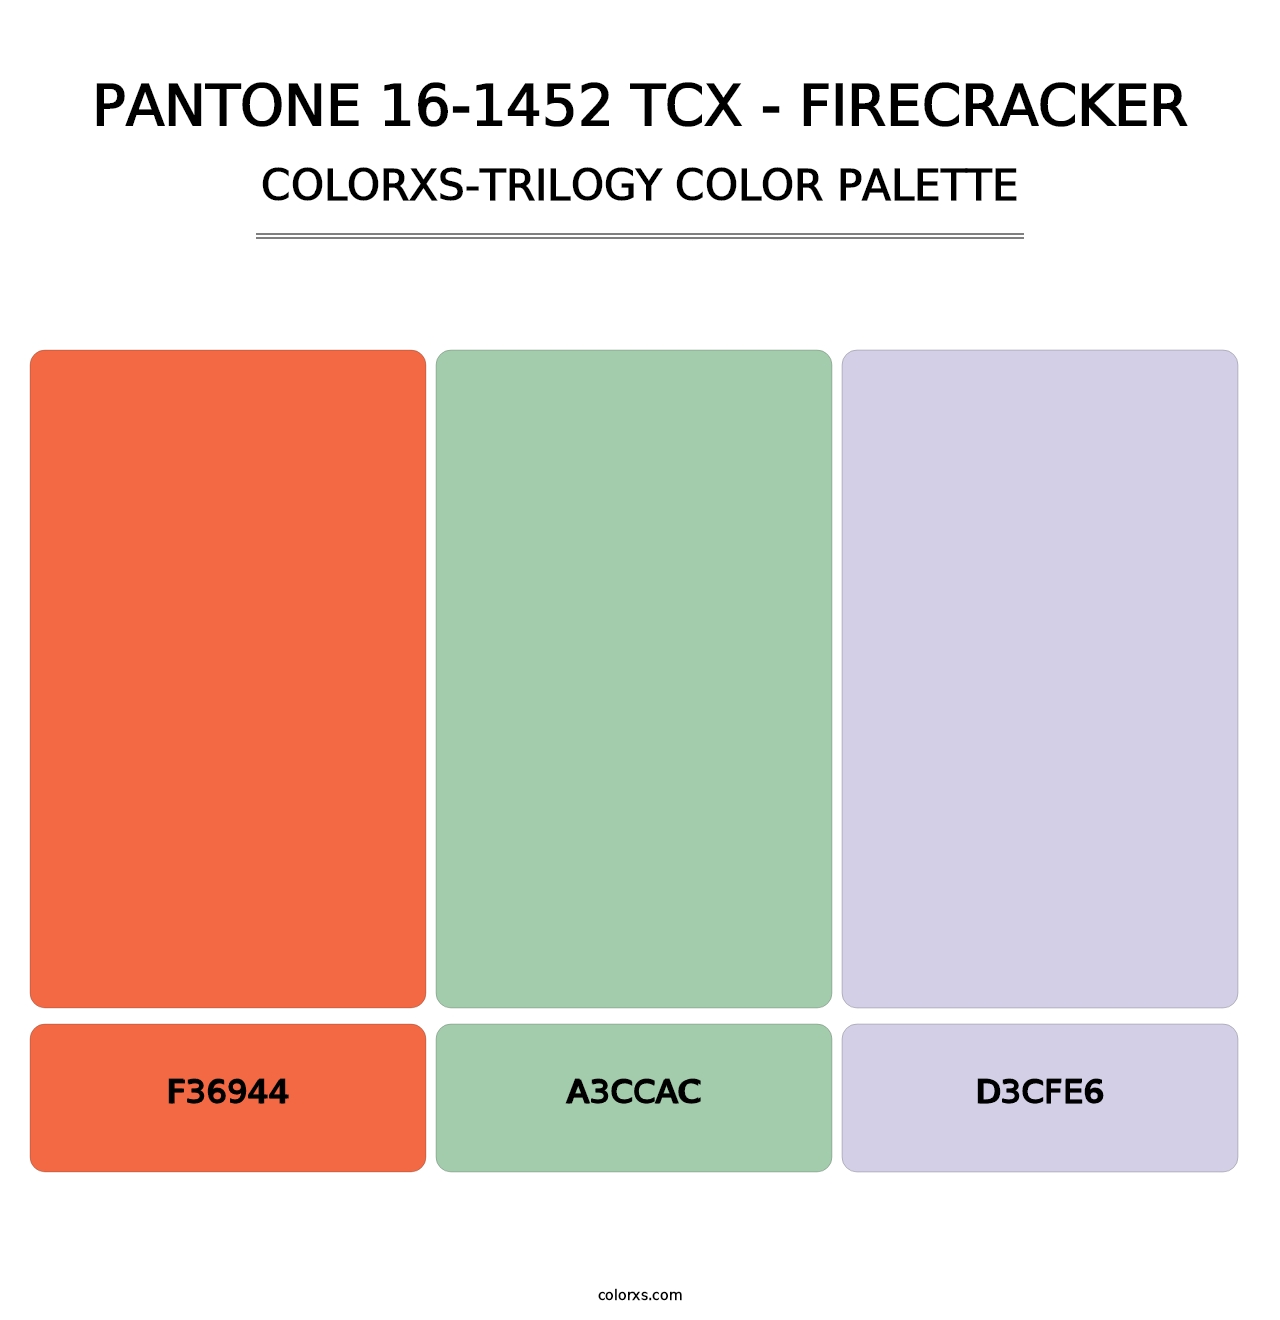 PANTONE 16-1452 TCX - Firecracker - Colorxs Trilogy Palette